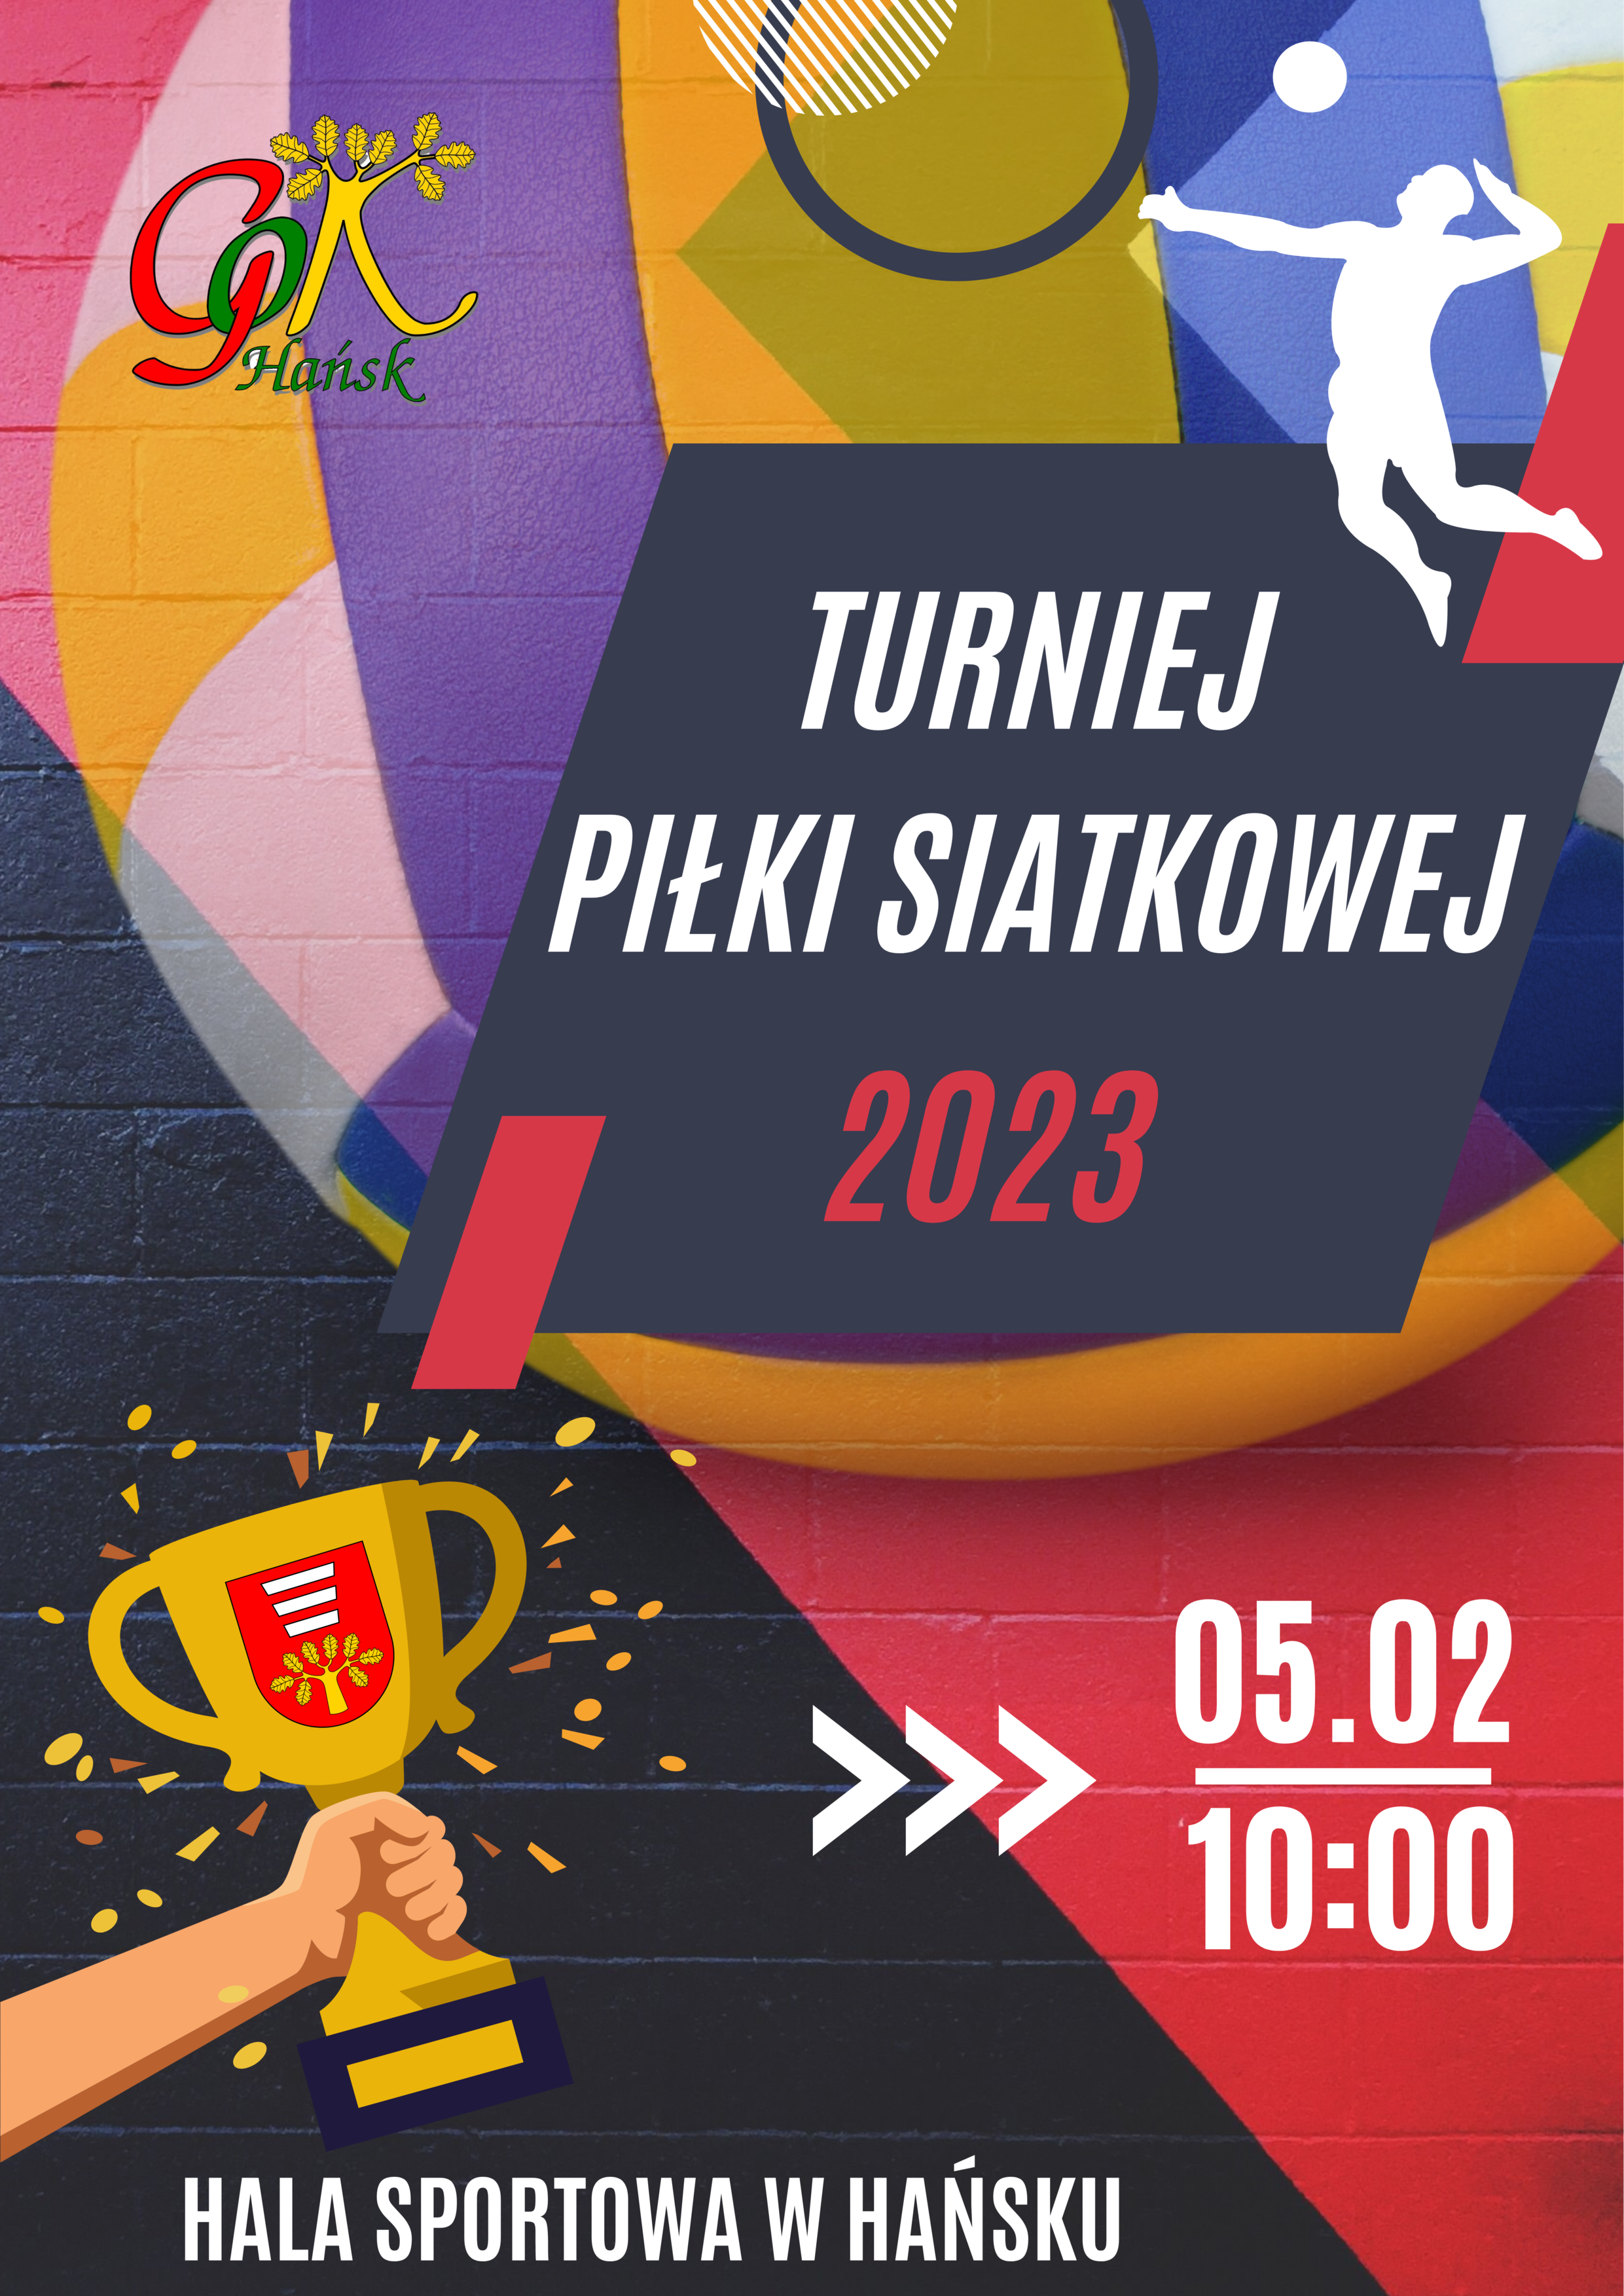 Turniej Piłki Siatkowej Hańsk 2023